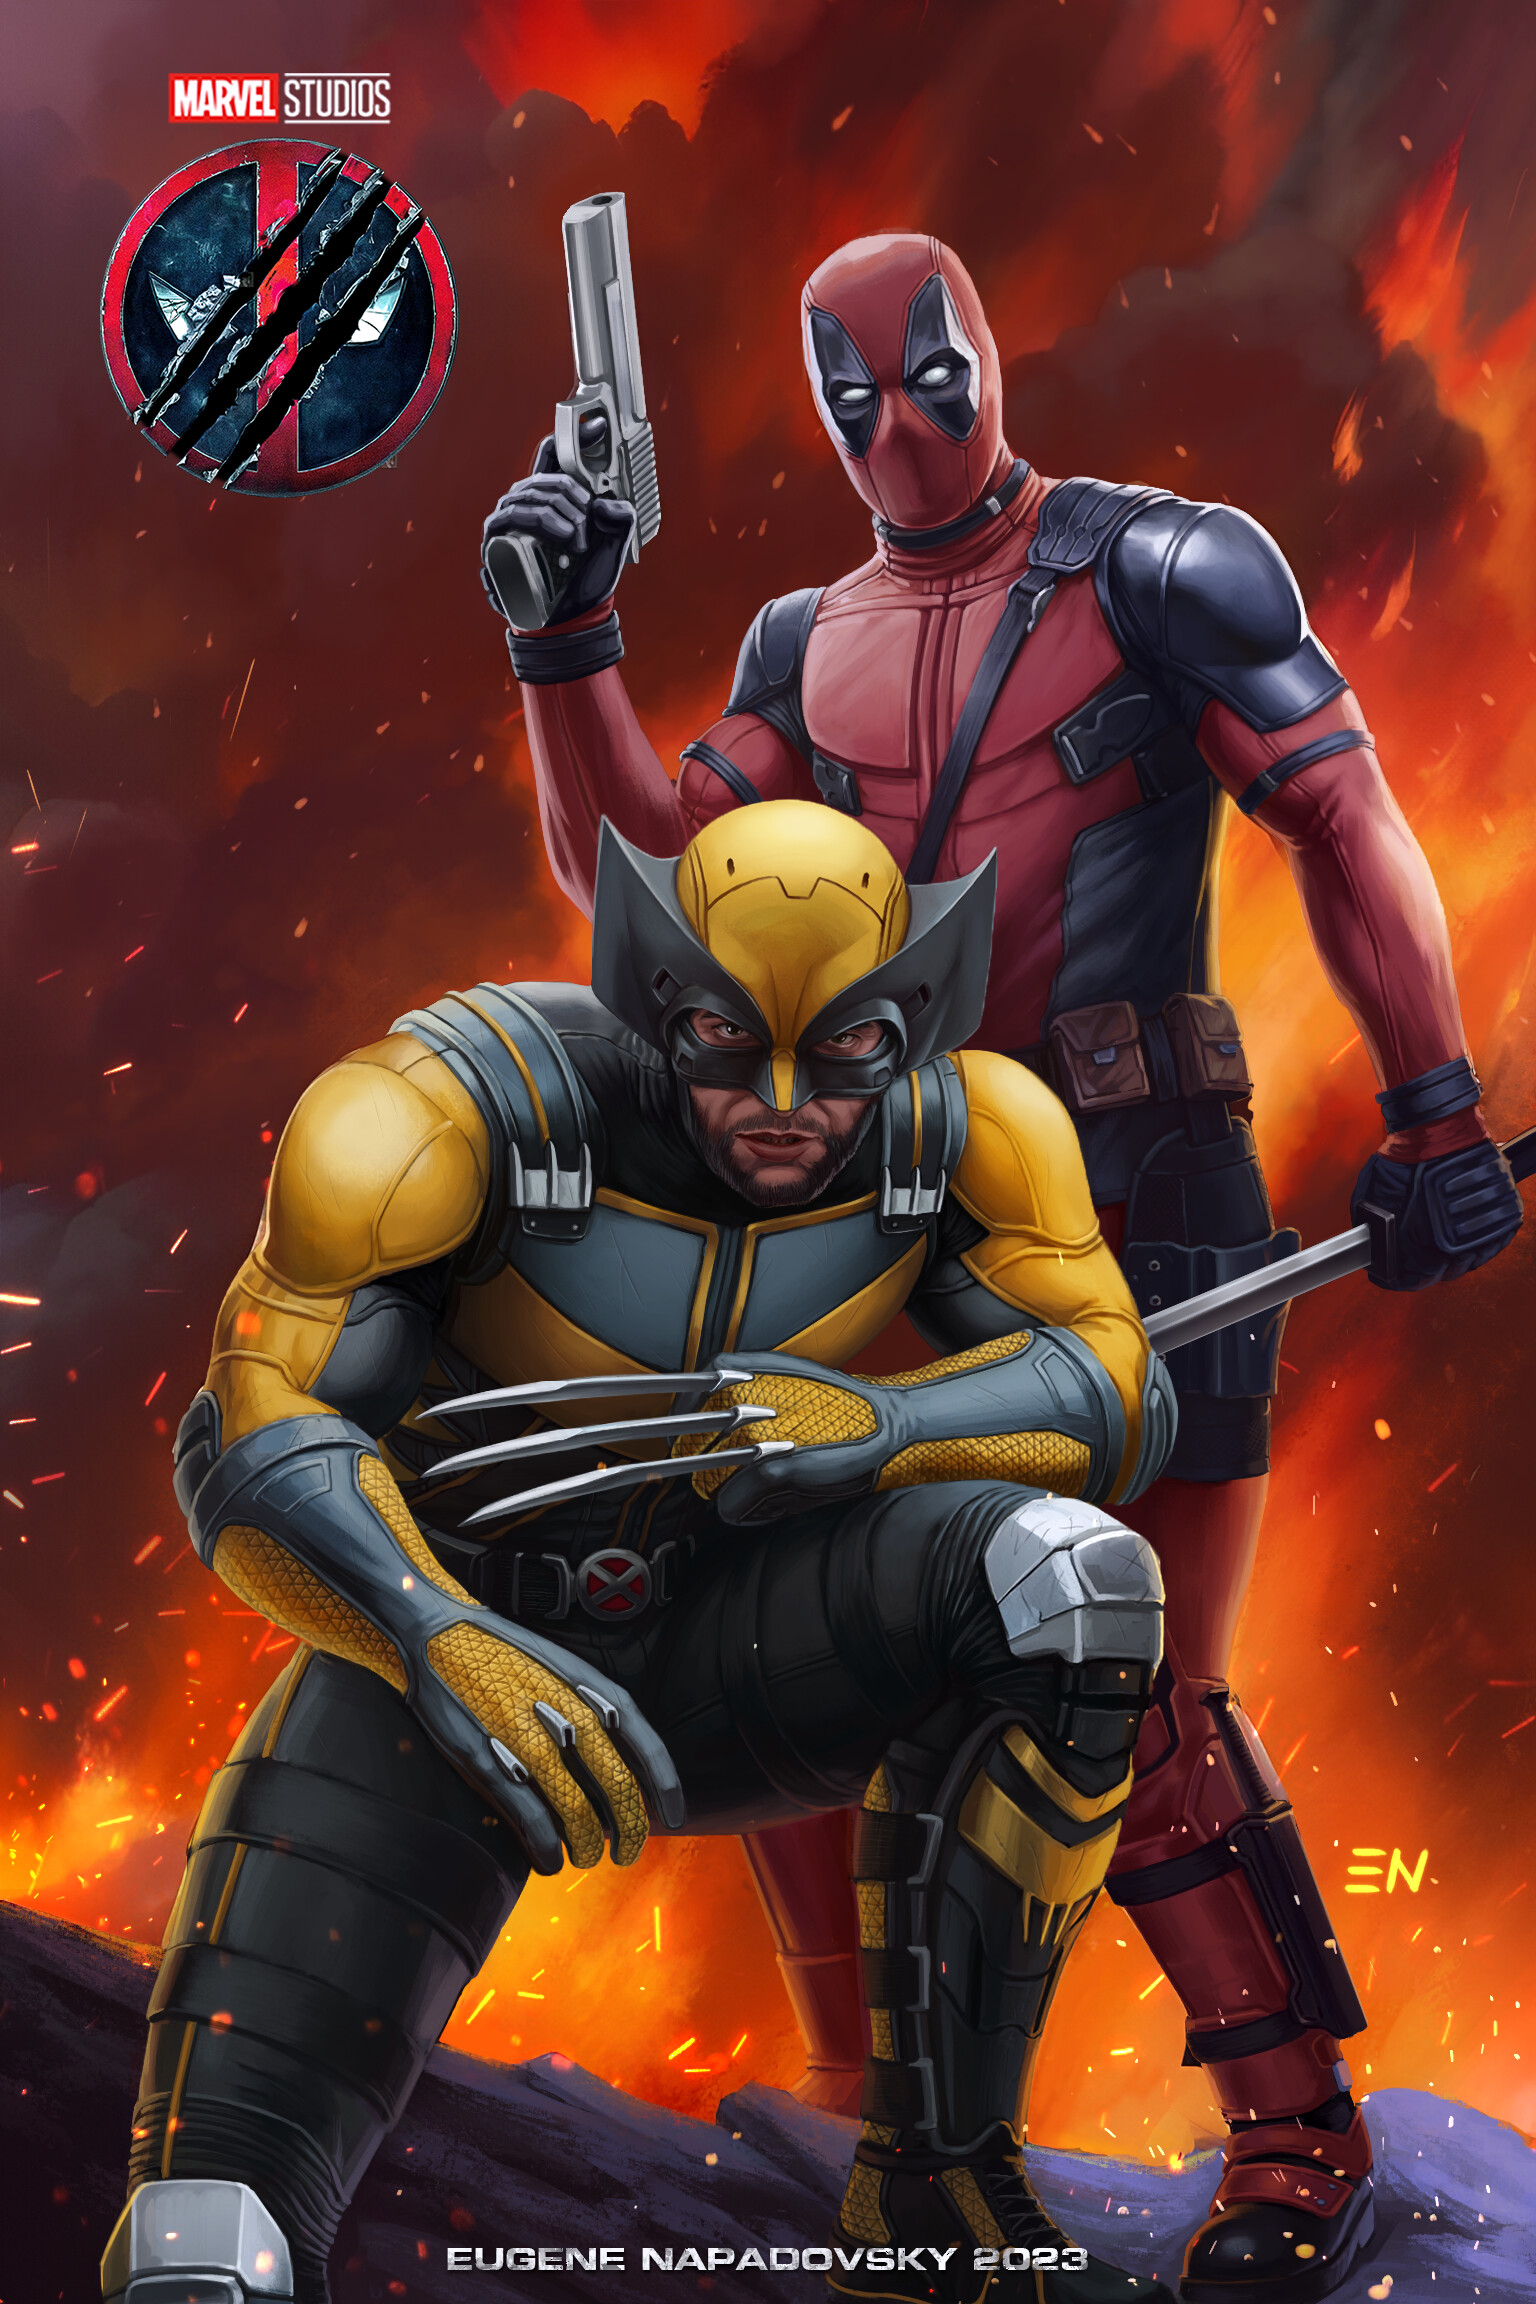 ArtStation - Deadpool 3 Poster in Secret Invasion Style